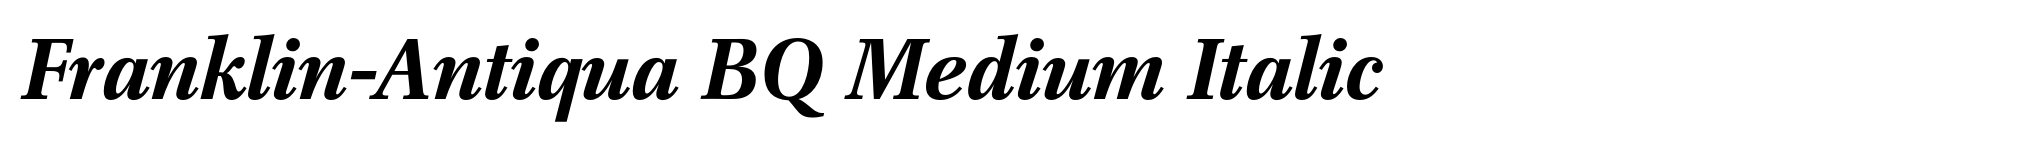 Franklin-Antiqua BQ Medium Italic image